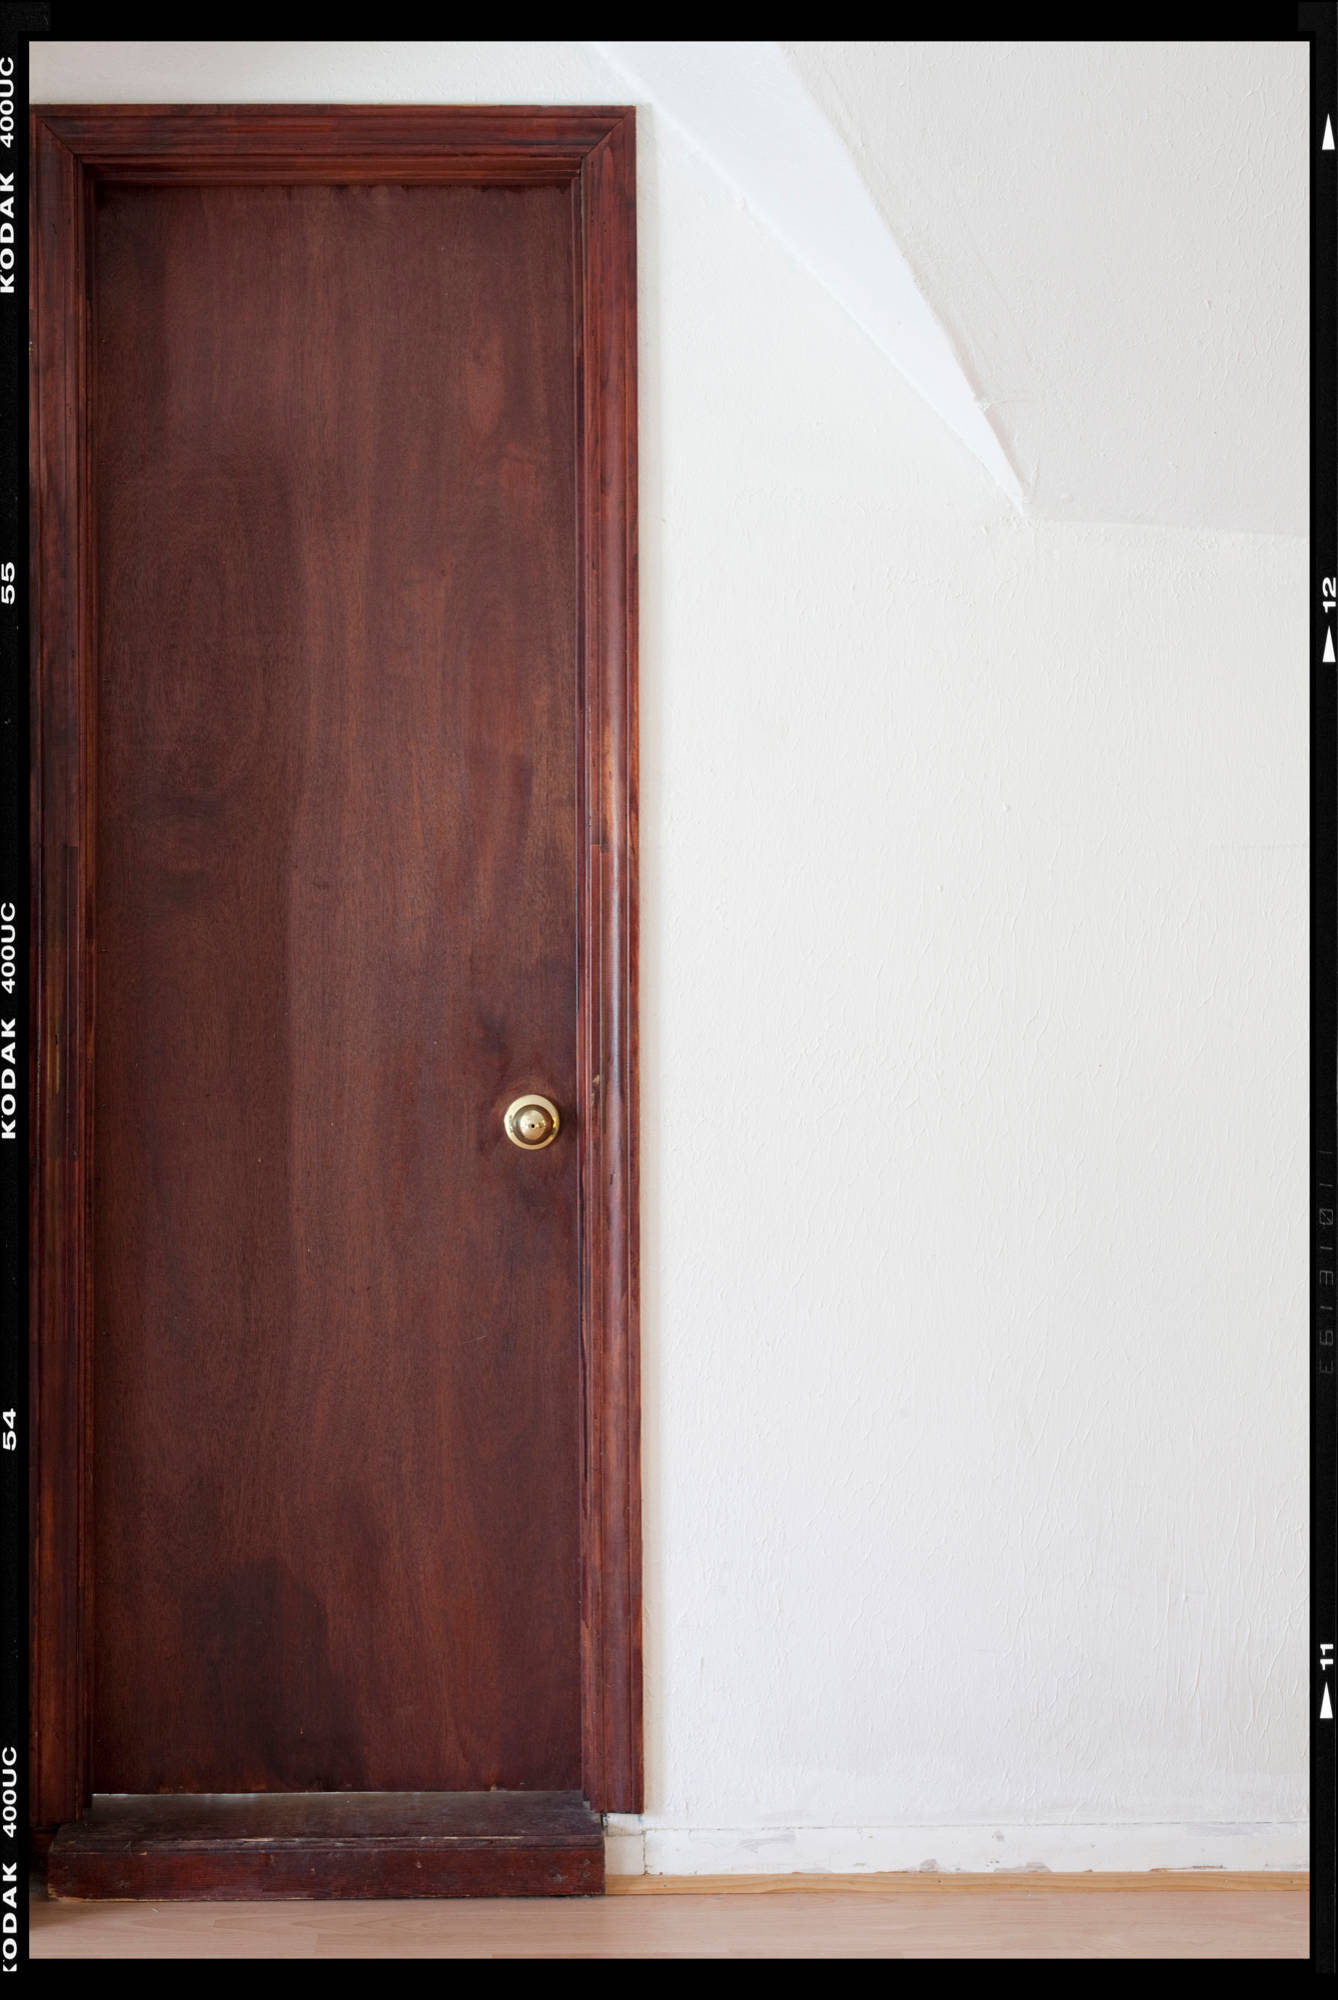 Как самостоятельно отреставрировать межкомнатную дверь, используя советы профессионалов и фото